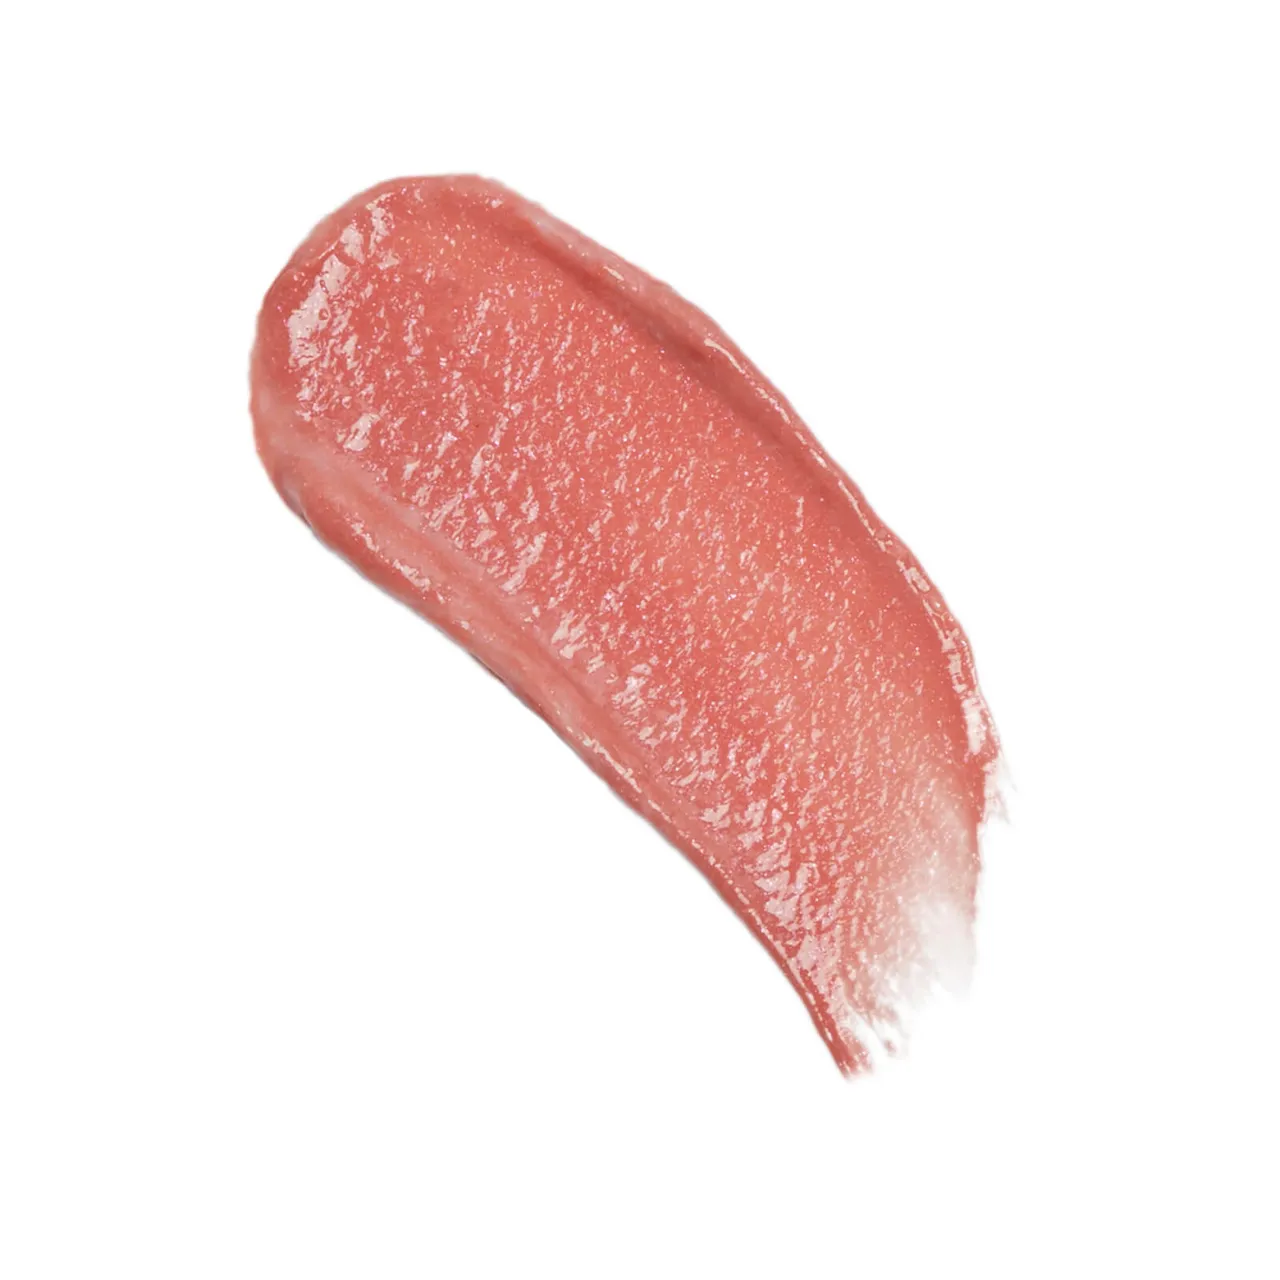 Revolution Festive Allure Ceramide Shimmer Lip Swirl 4.5ml (Various Shades) - Glitz Nude